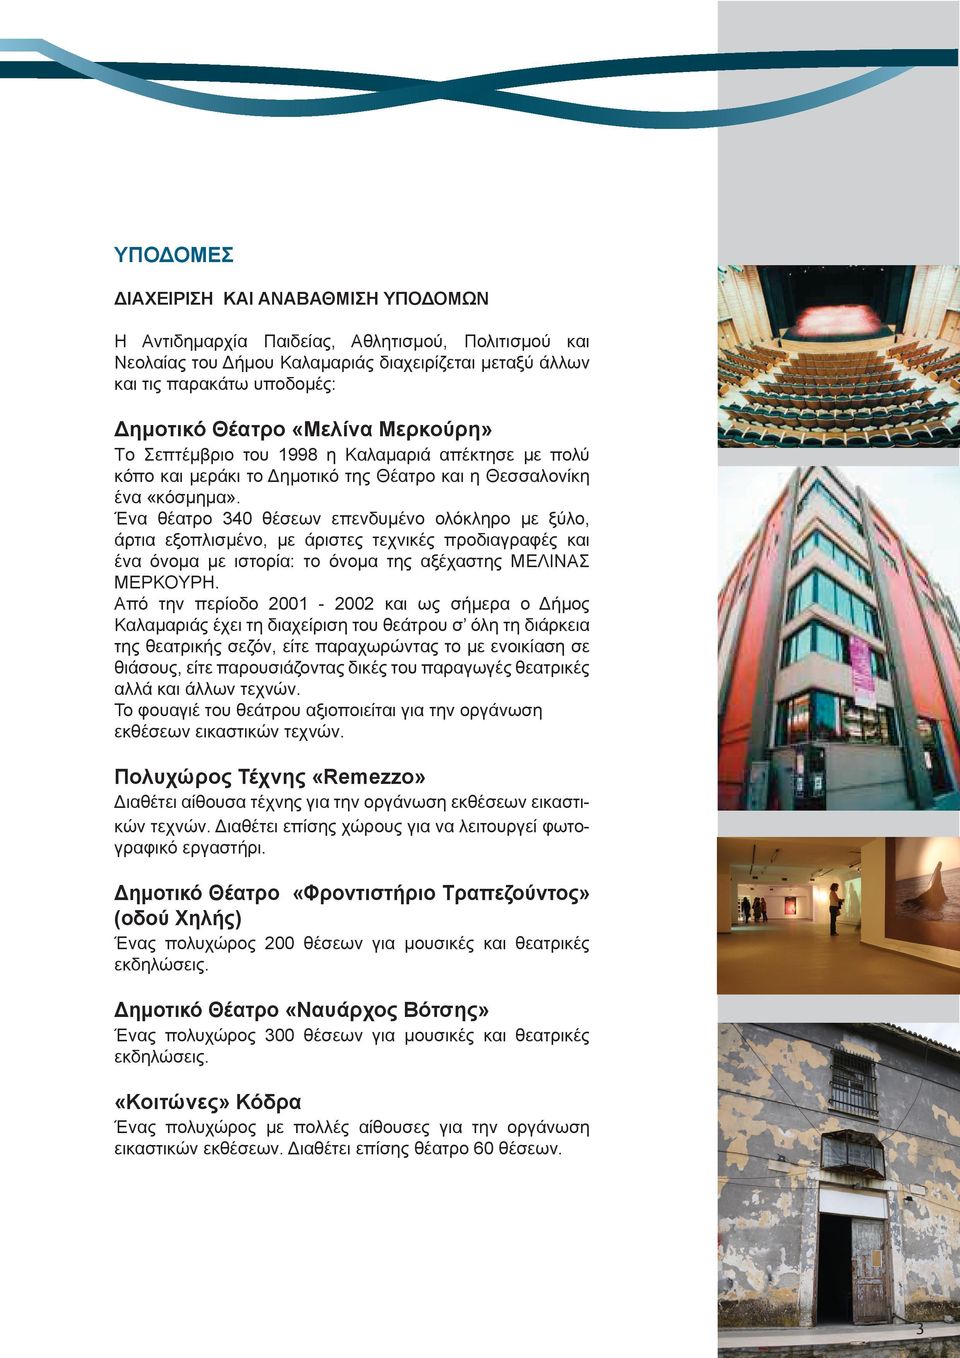 Ένα θέατρο 340 θέσεων επενδυμένο ολόκληρο με ξύλο, άρτια εξοπλισμένο, με άριστες τεχνικές προδιαγραφές και ένα όνομα με ιστορία: το όνομα της αξέχαστης MEΛINAΣ MEPKOYPH.